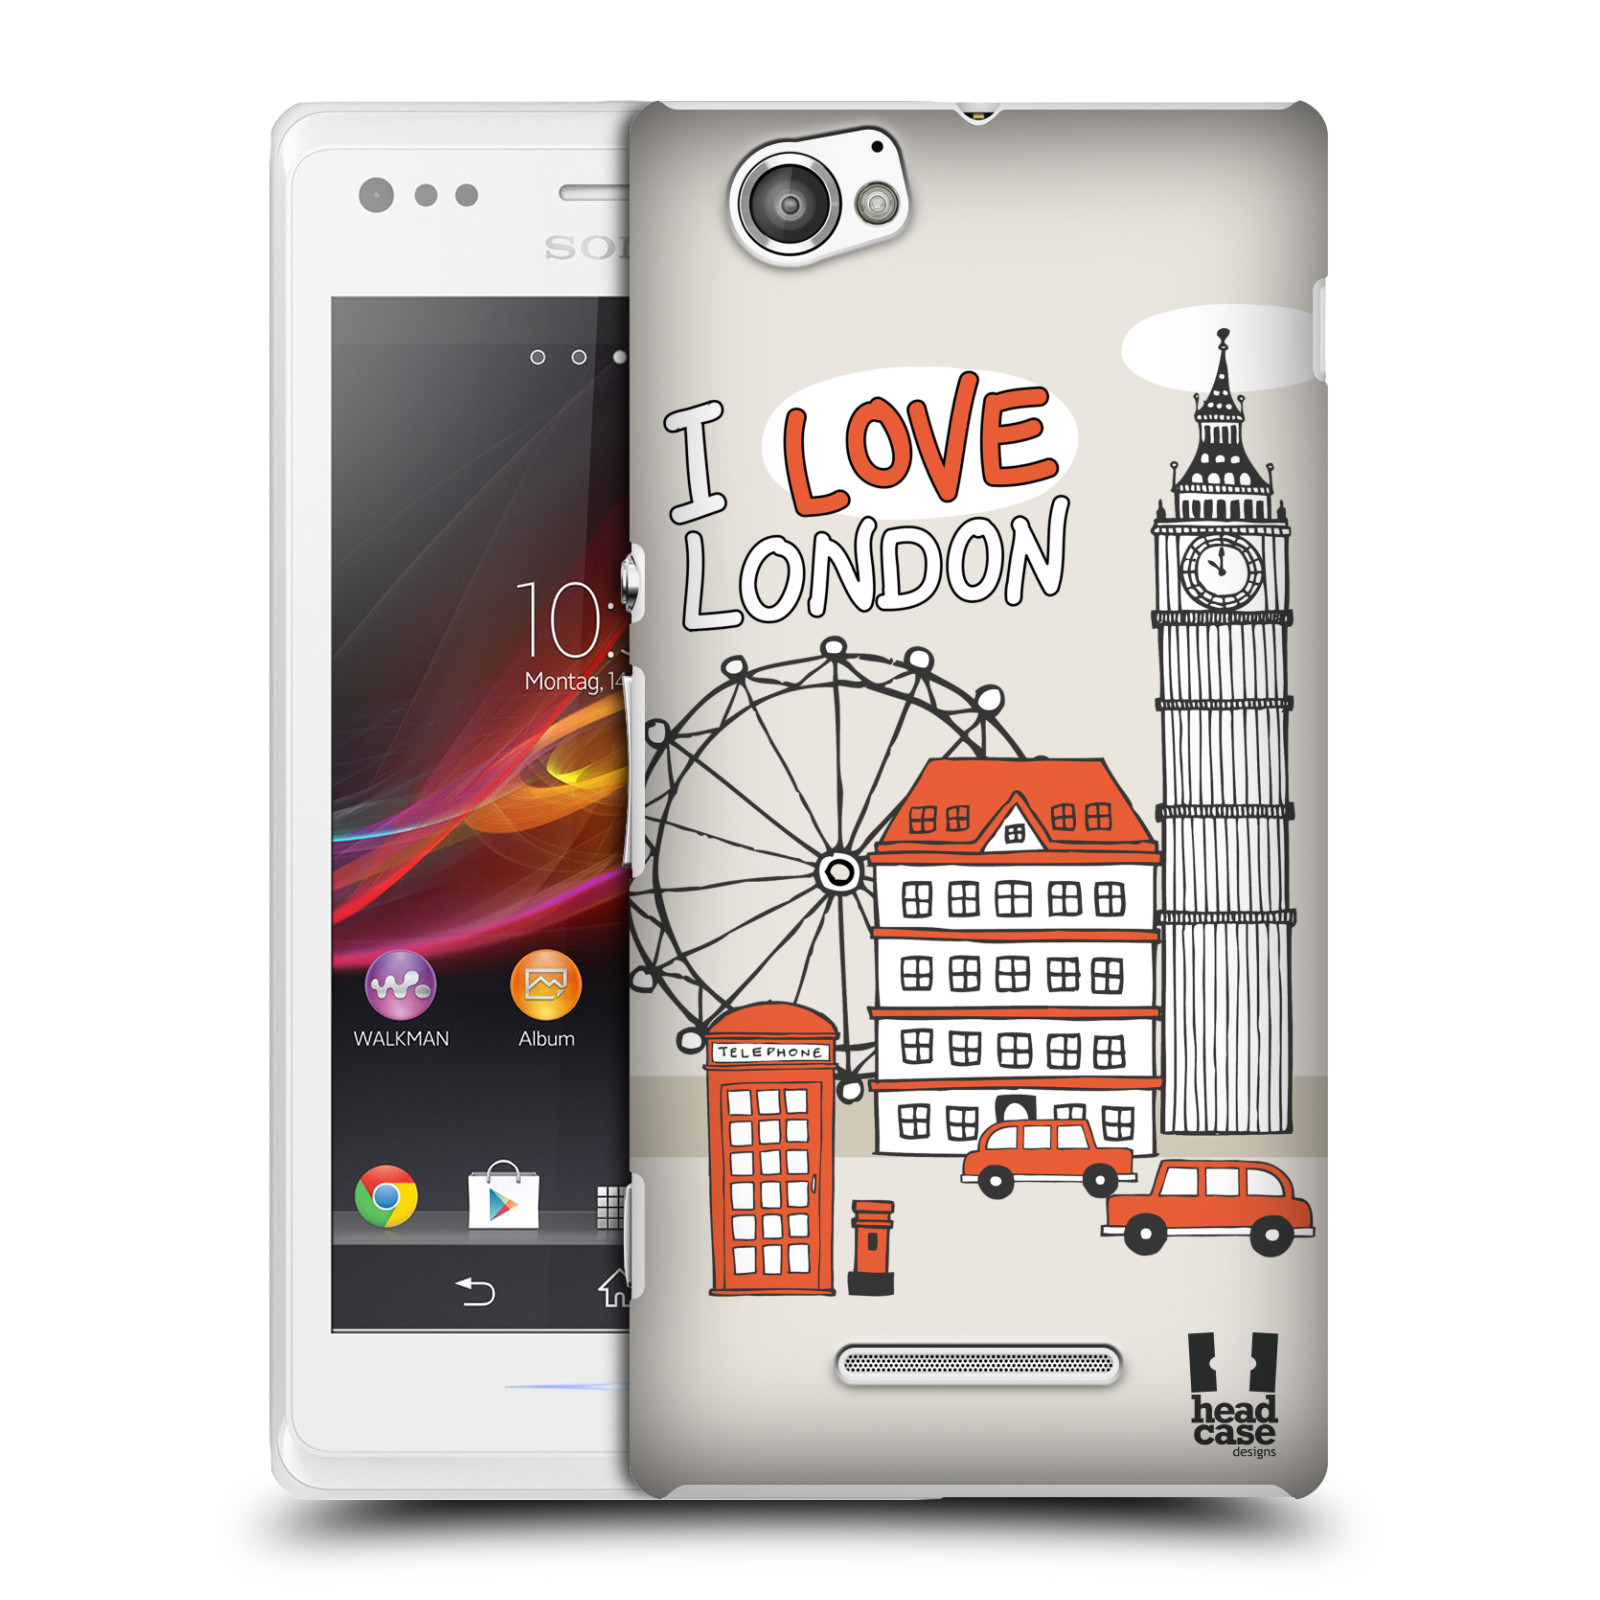 HEAD CASE plastový obal na mobil Sony Xperia M vzor Kreslená městečka ČERVENÁ, Anglie, Londýn, I LOVE LONDON